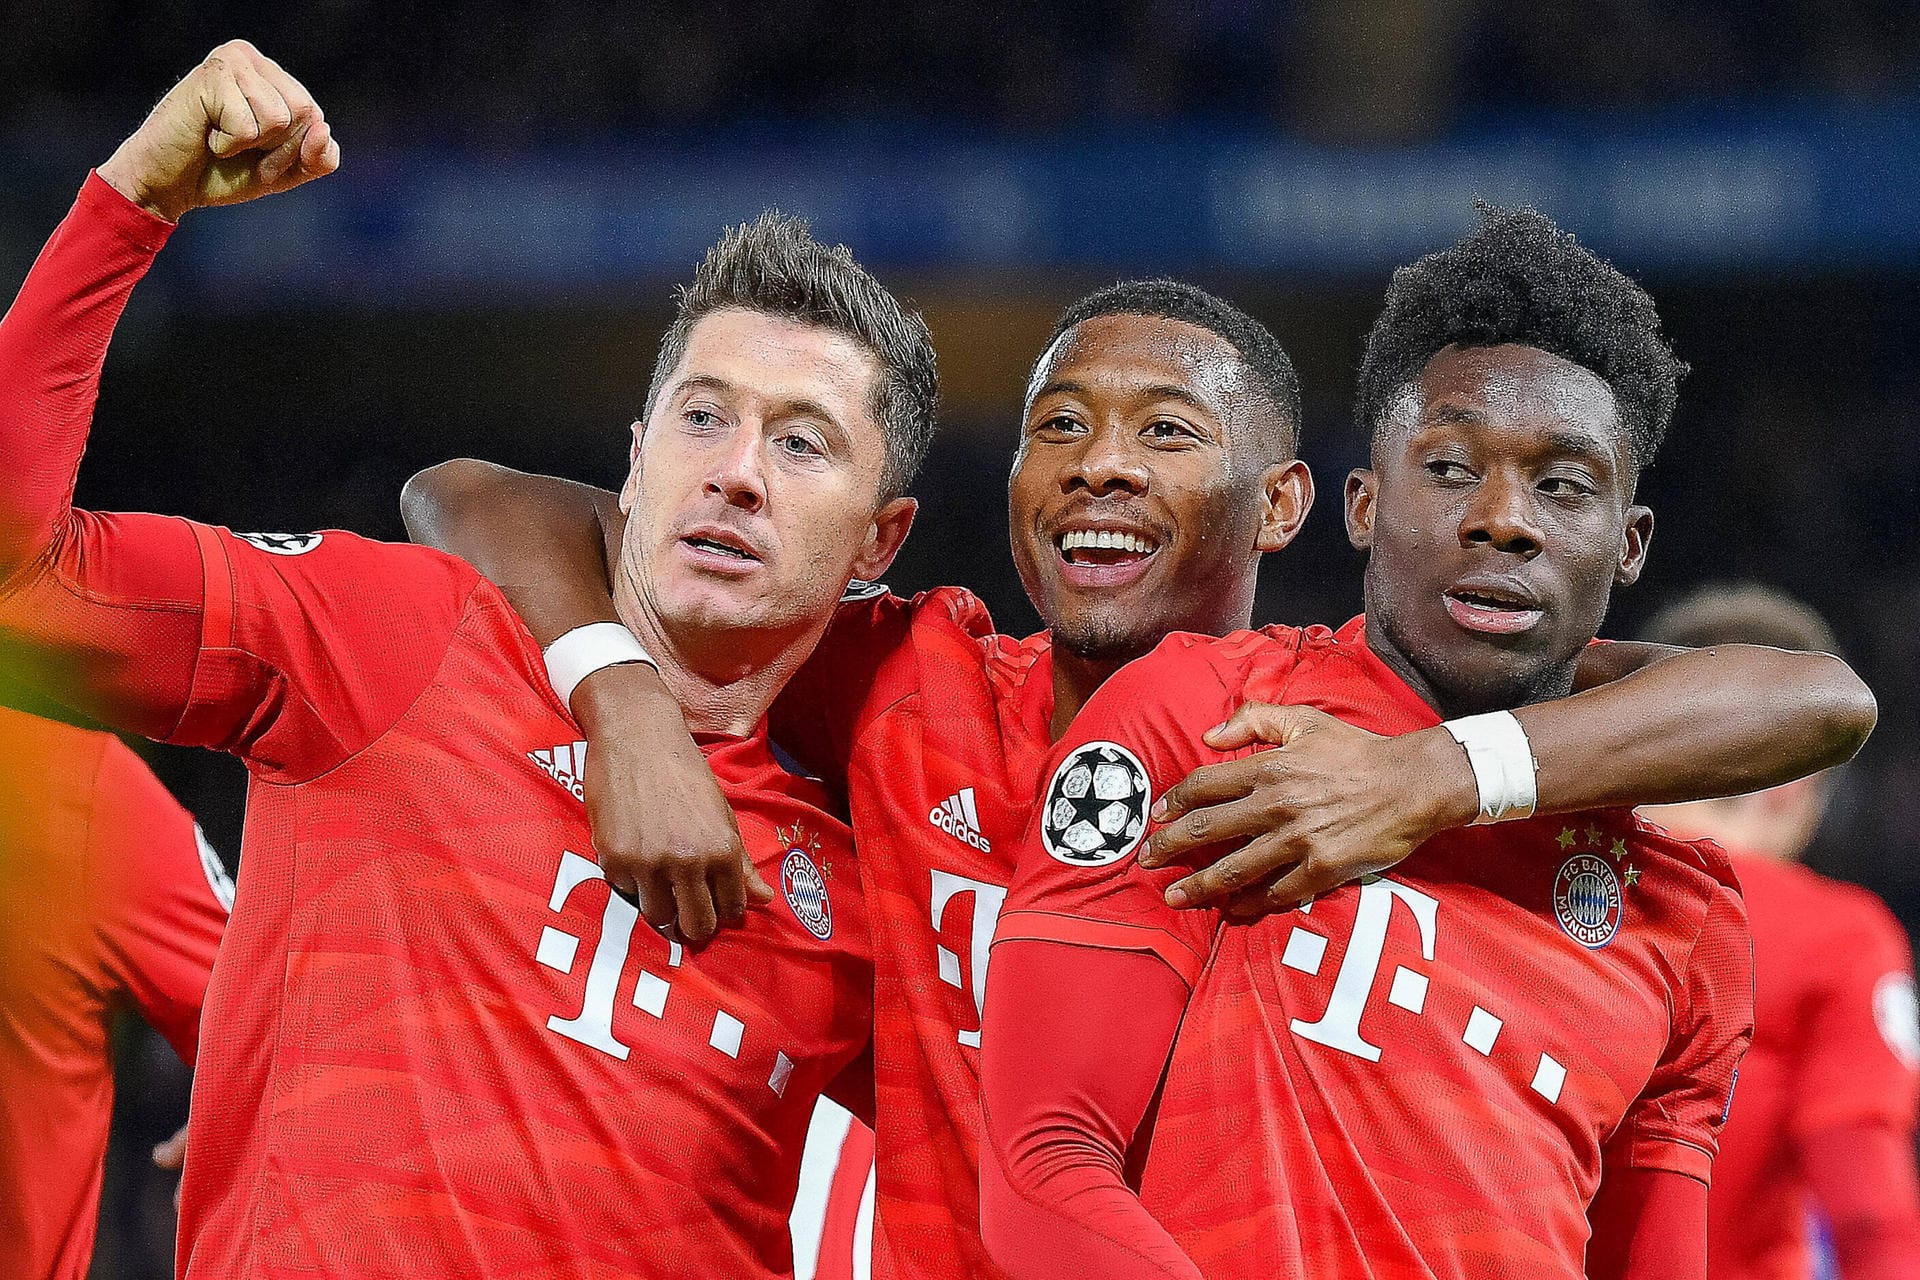 Der FC Bayern München hat den Grundstein für ein Weiterkommen in der Champions League gelegt. Beim 3:0-Hinspielsieg gegen den FC Chelsea brillierte der Rekordmeister. Die Münchner in der Einzelkritik.